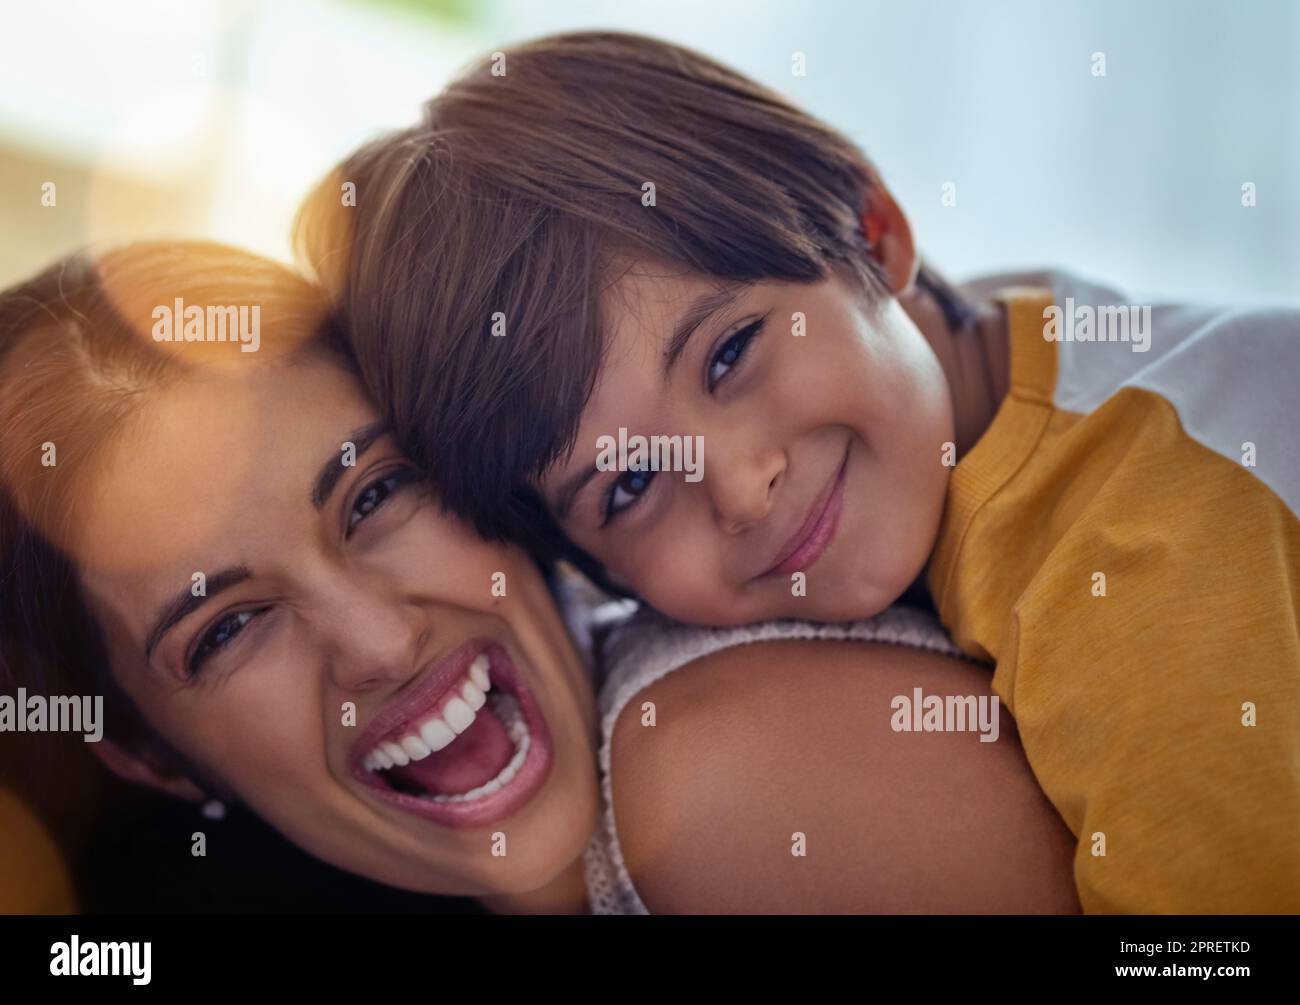 Nichts ganz so liebenswertes wie die Liebe einer Mutter. Ein entzückender kleiner Junge umarmte seine Mutter zu Hause liebevoll. Stockfoto